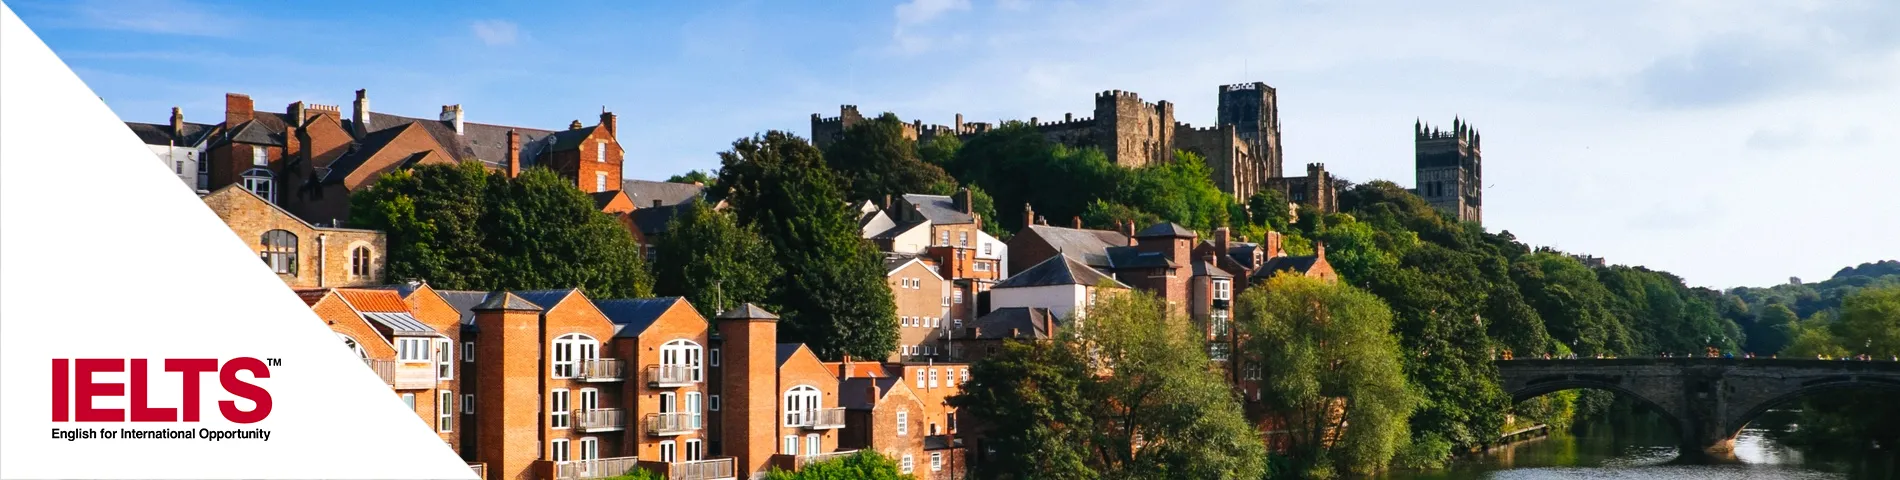 Durham - 